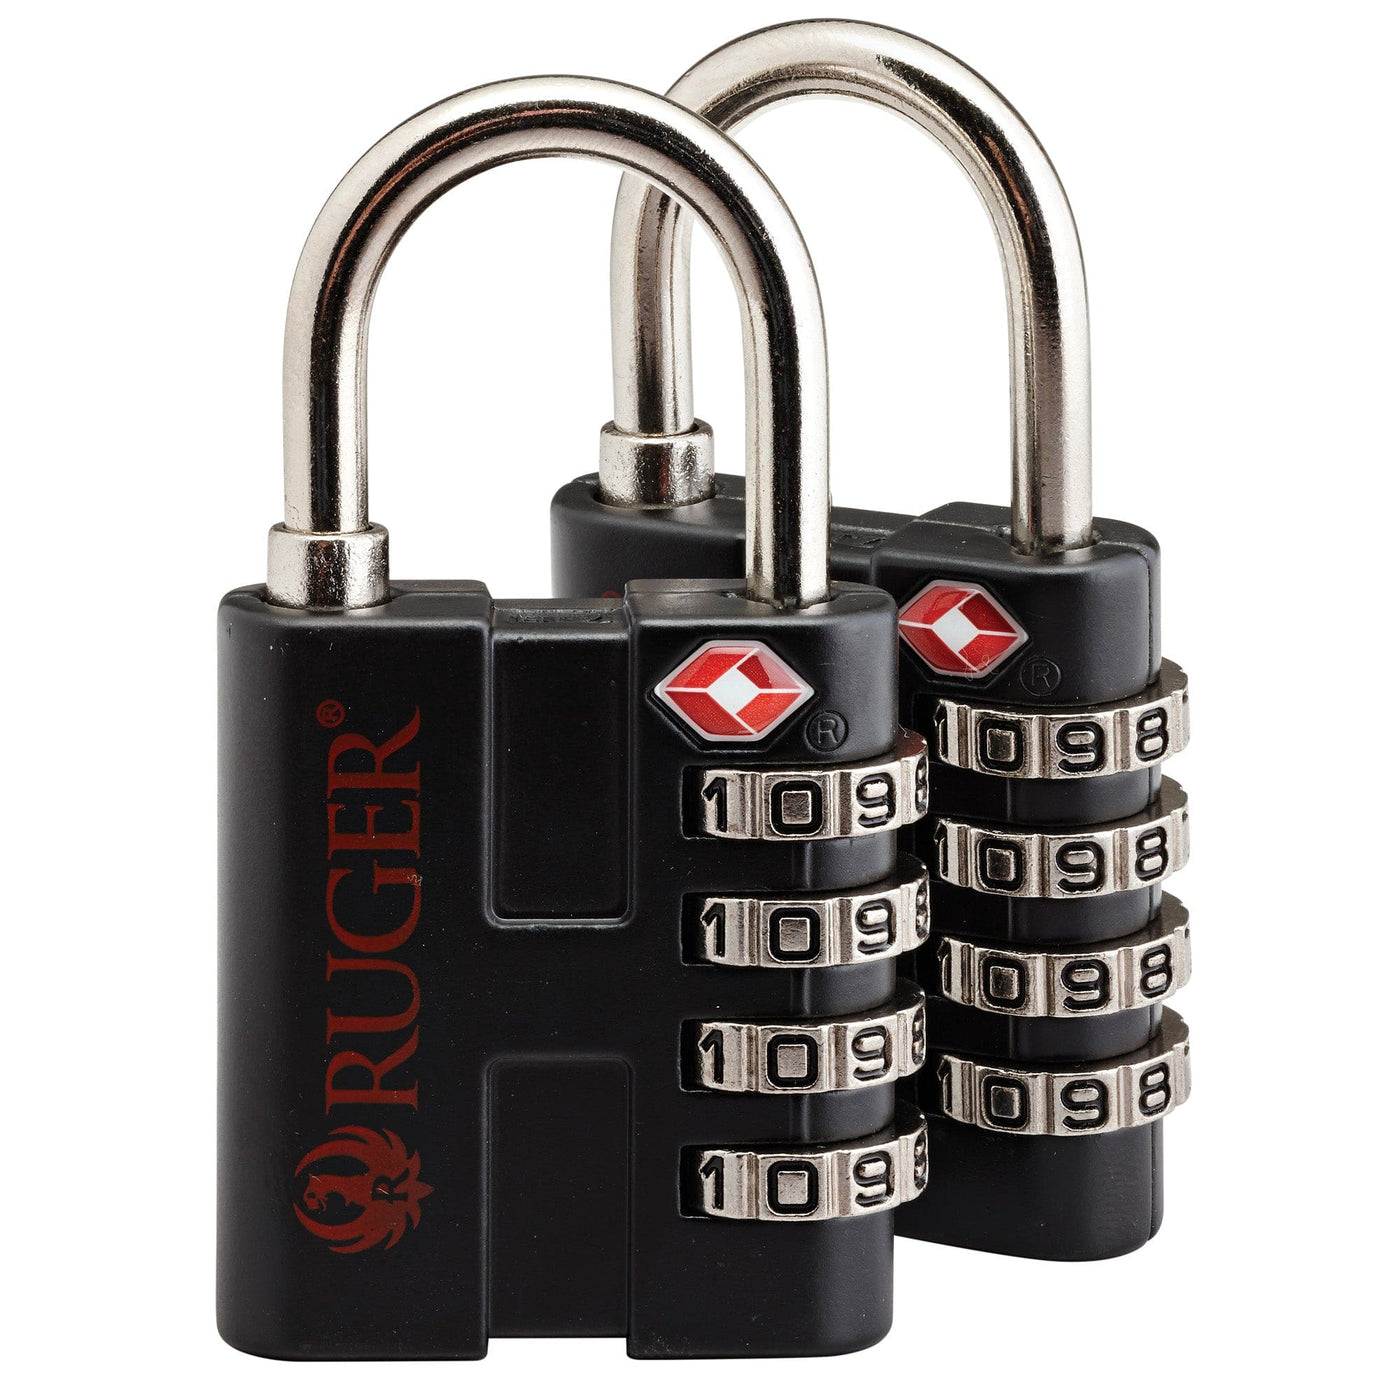 SnapSafe Snapsafe Tsa Padlock (2 Pack) Safes/Security